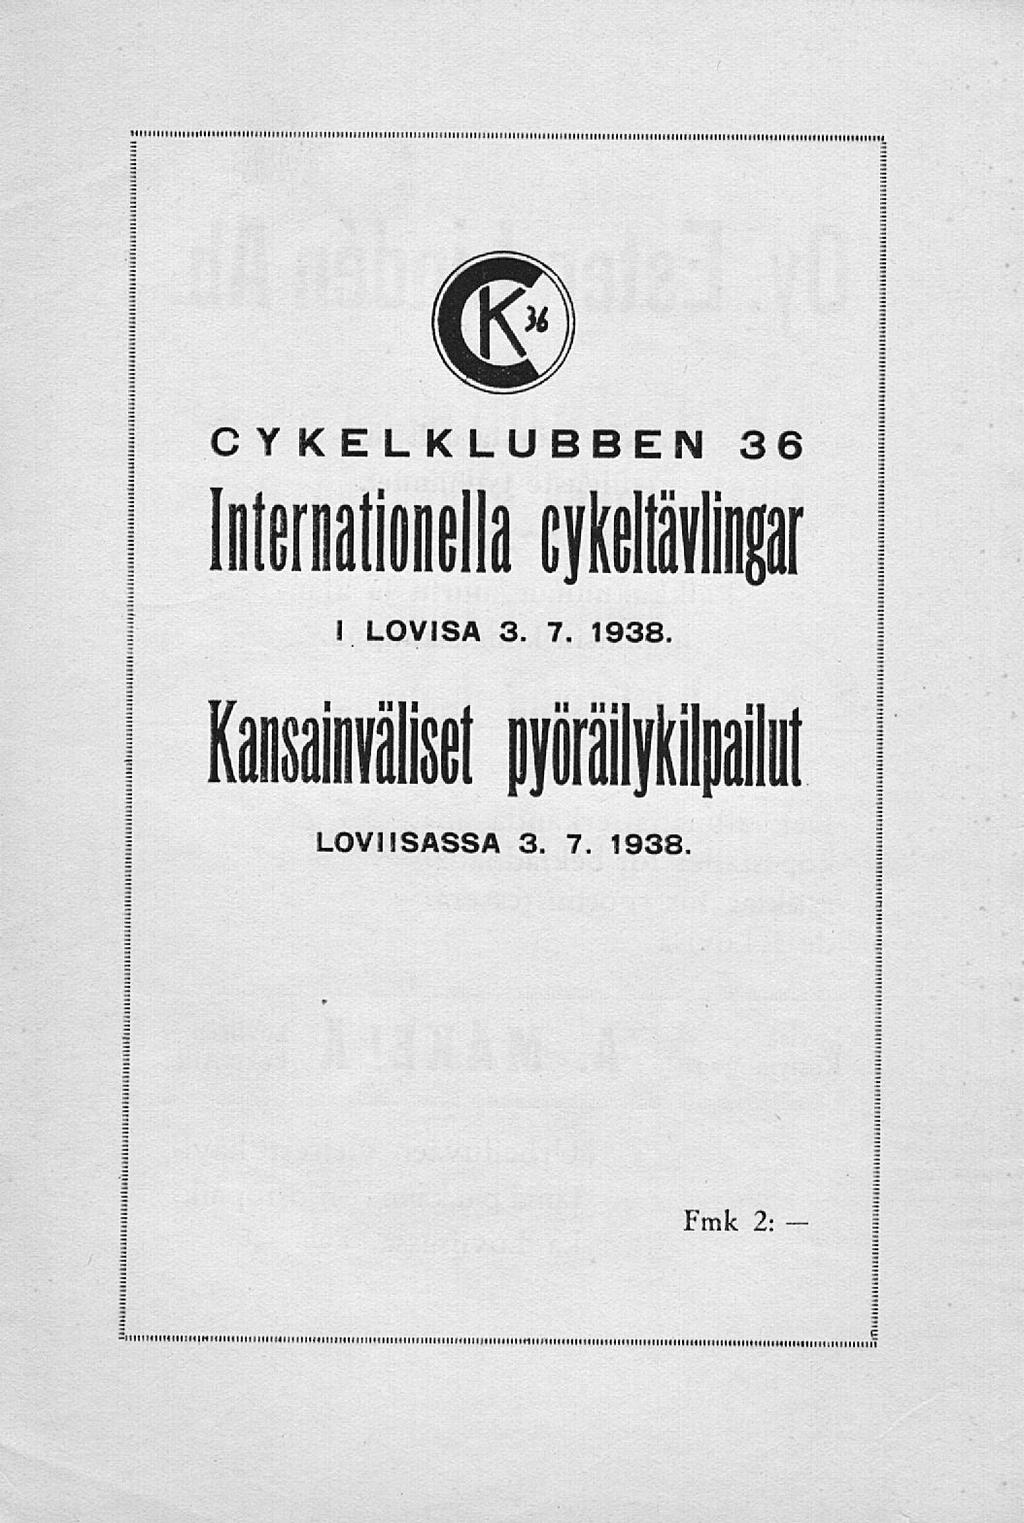 - CV KELKLUBBEN 36 Internationella cykelliip I LOVISA 3. 7. 1938.